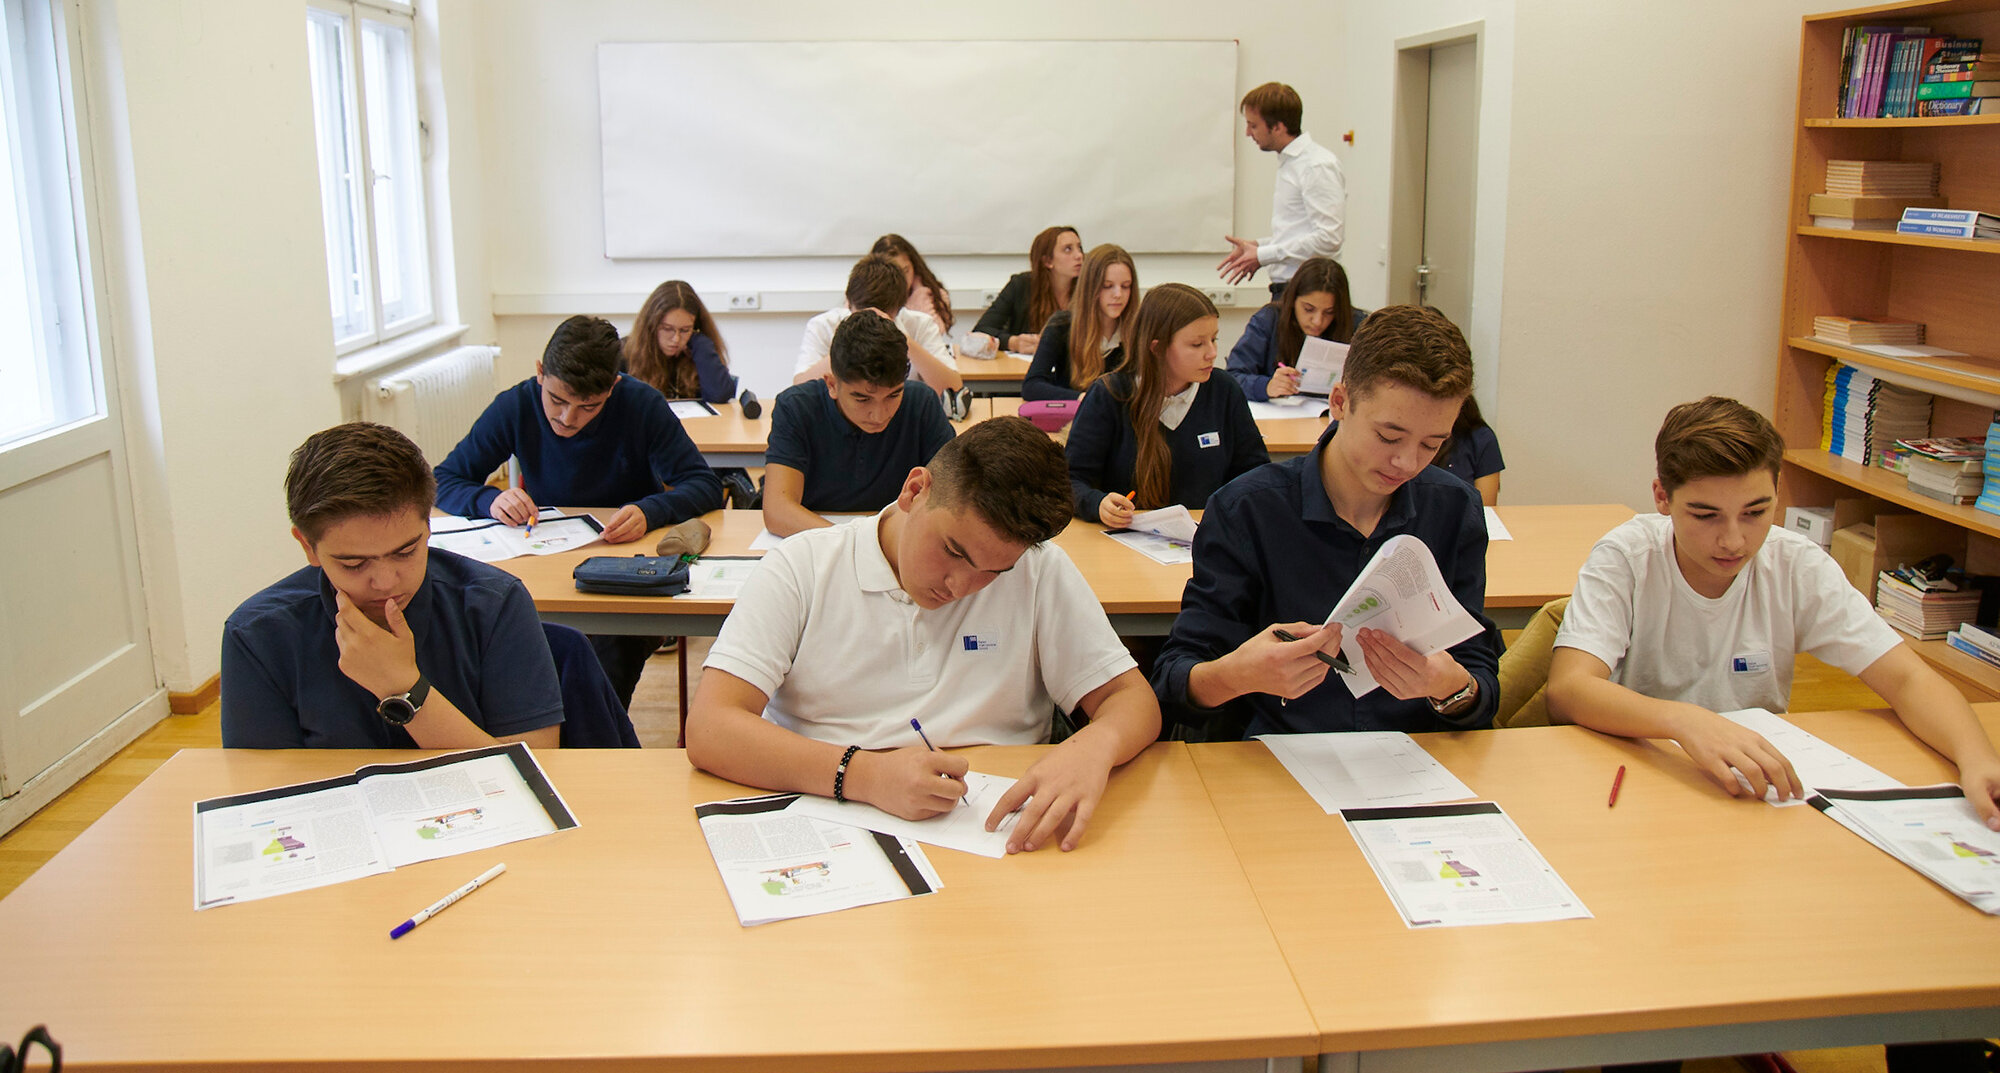 Schülerinnen und Schüler sitzen an vier Tischreihen im Klassenzimmer und bearbeiten Arbeitsblätter. 